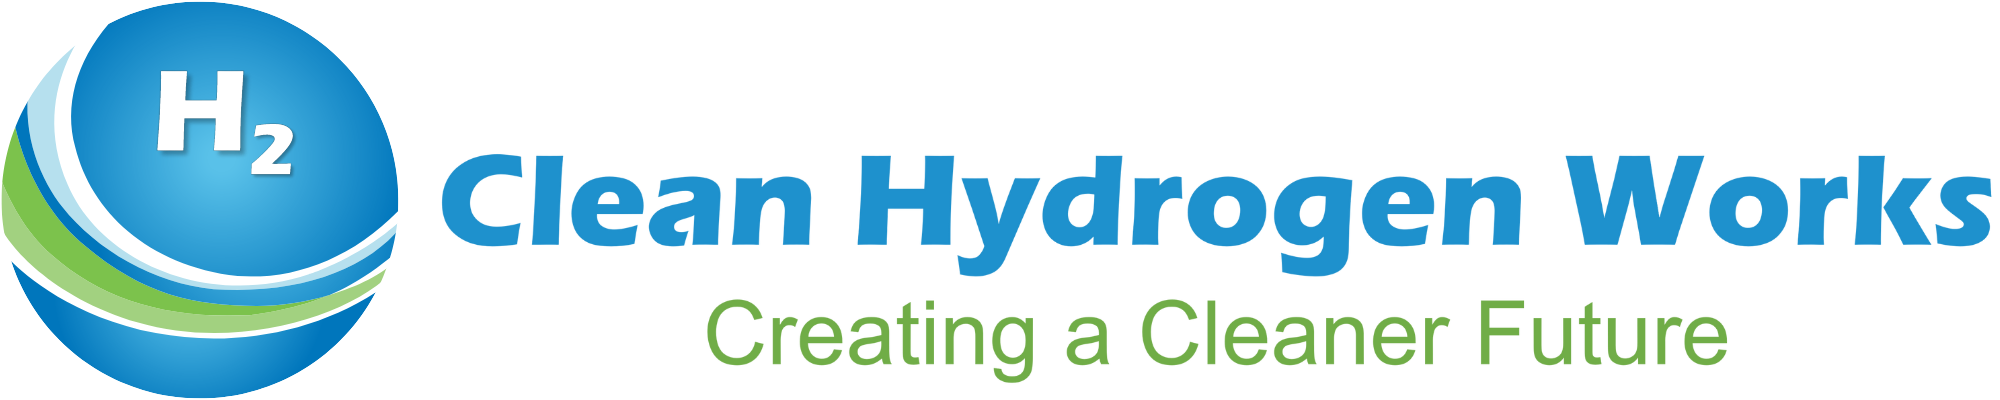 Clean Hydrogen Works Logo